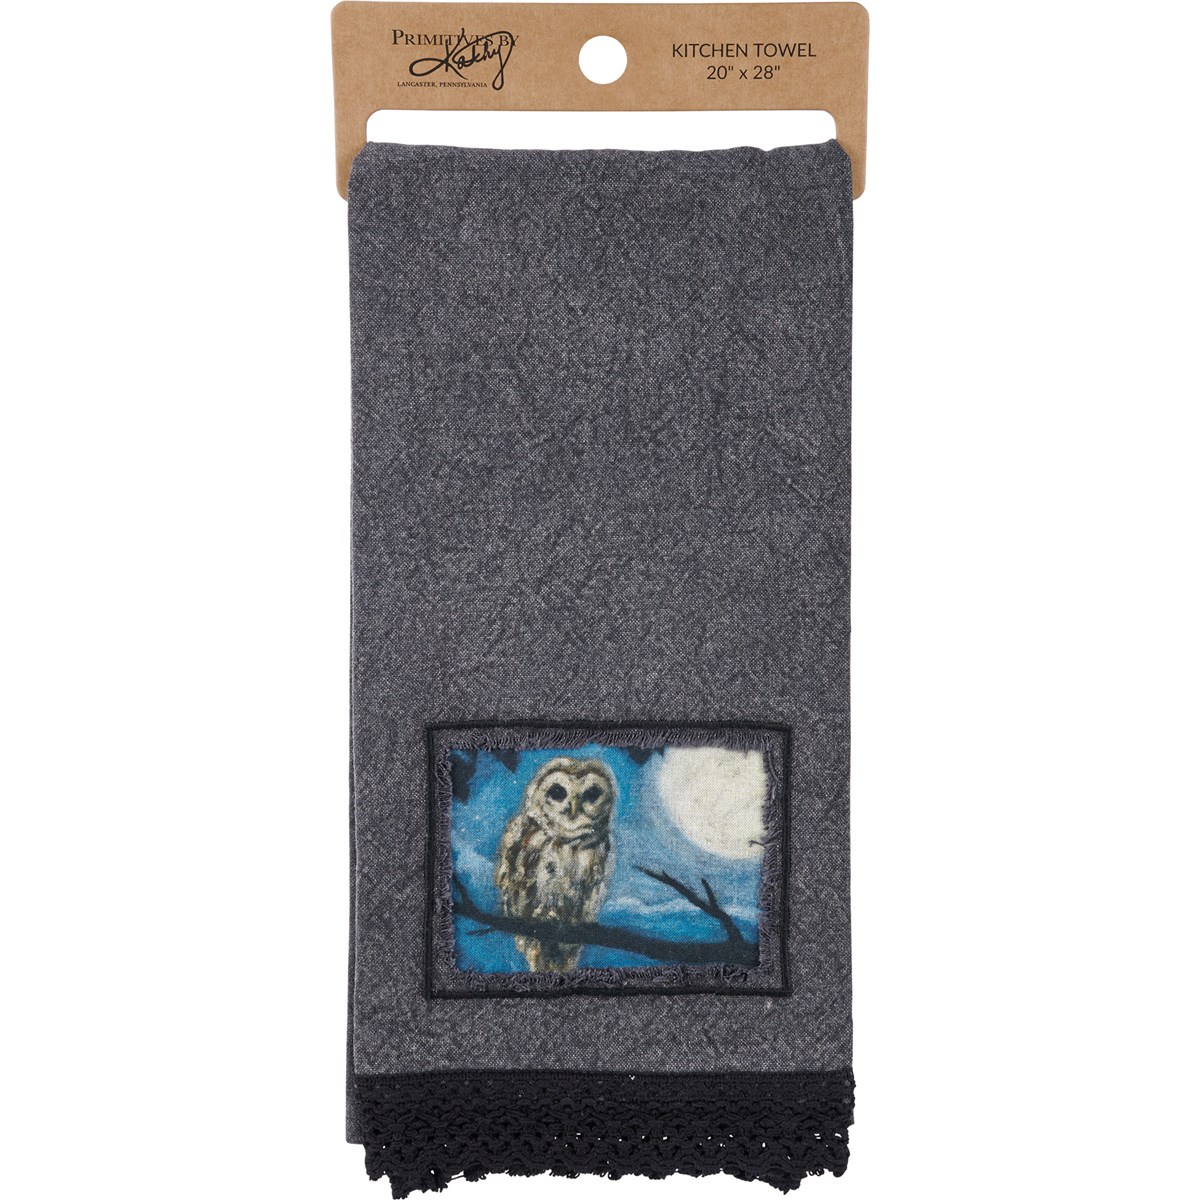 Owl Kitchen Towel - Cotton, Lace